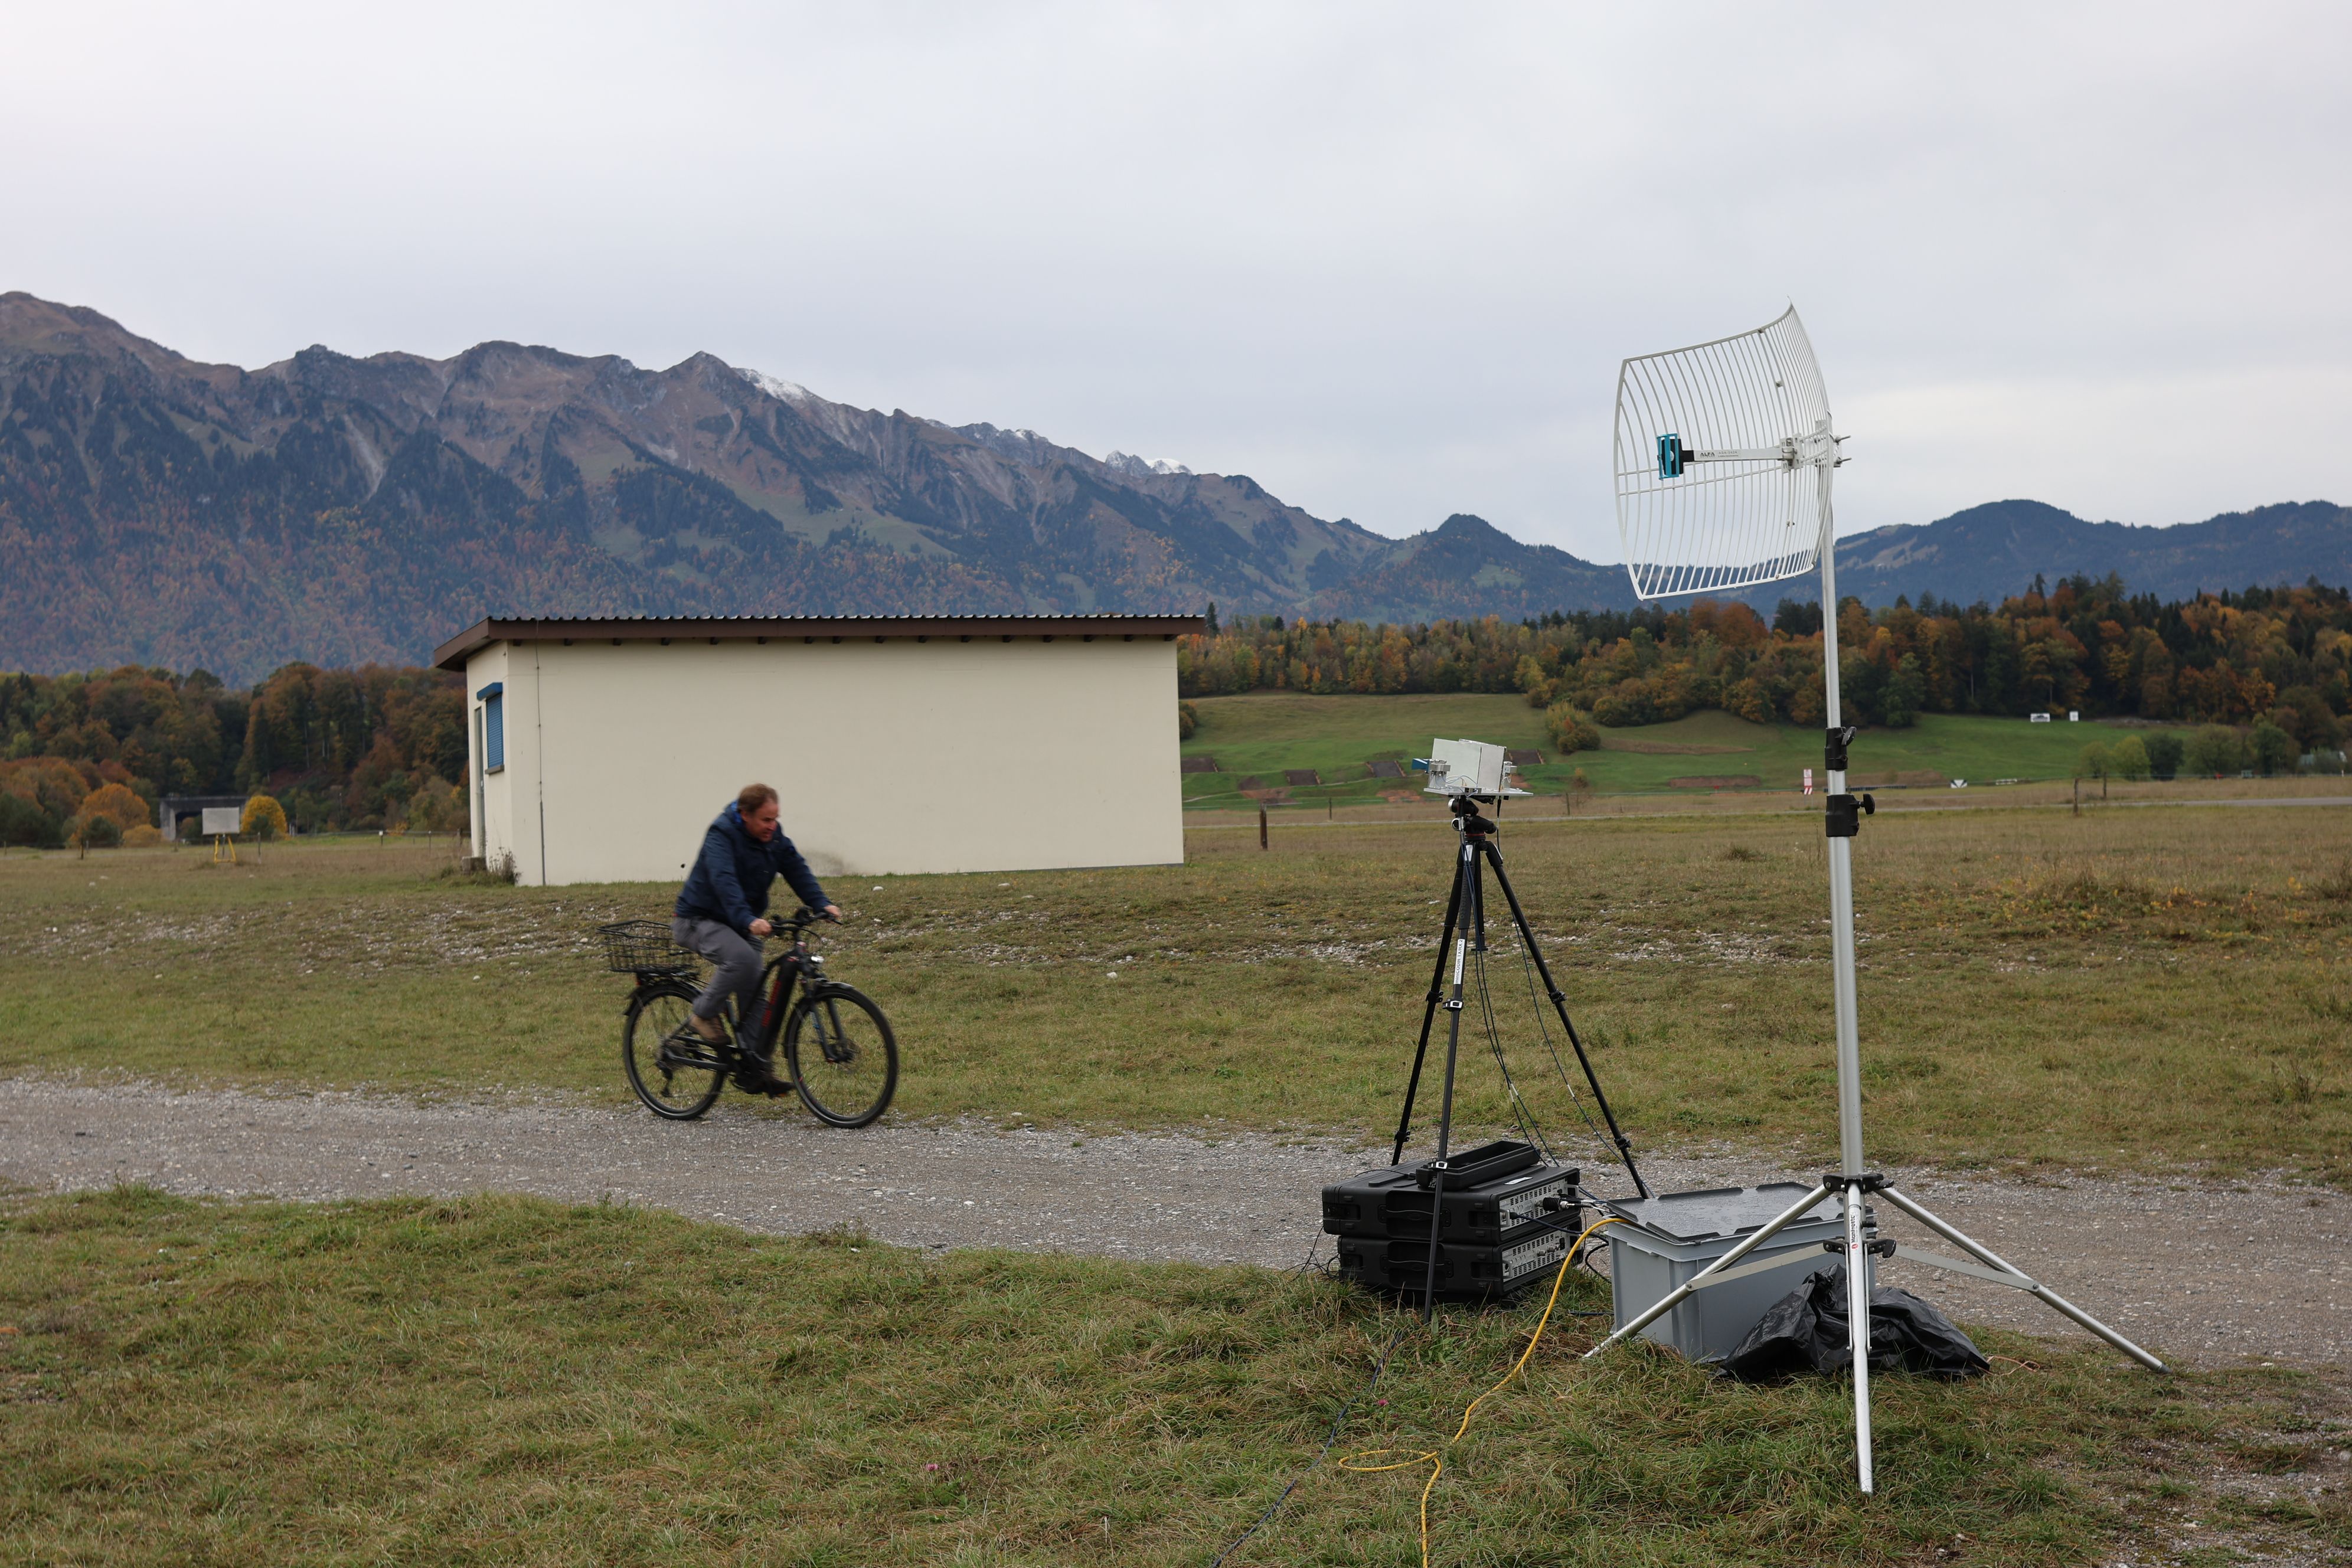 Im Vordergrund sieht man zwei Kisten, eine Antenne und ein schwarzes Stativ. Darauf zu fährt ein Mann auf einem Fahrrad und im Hintergrund befindet sich ein kleines Haus und Natur. 